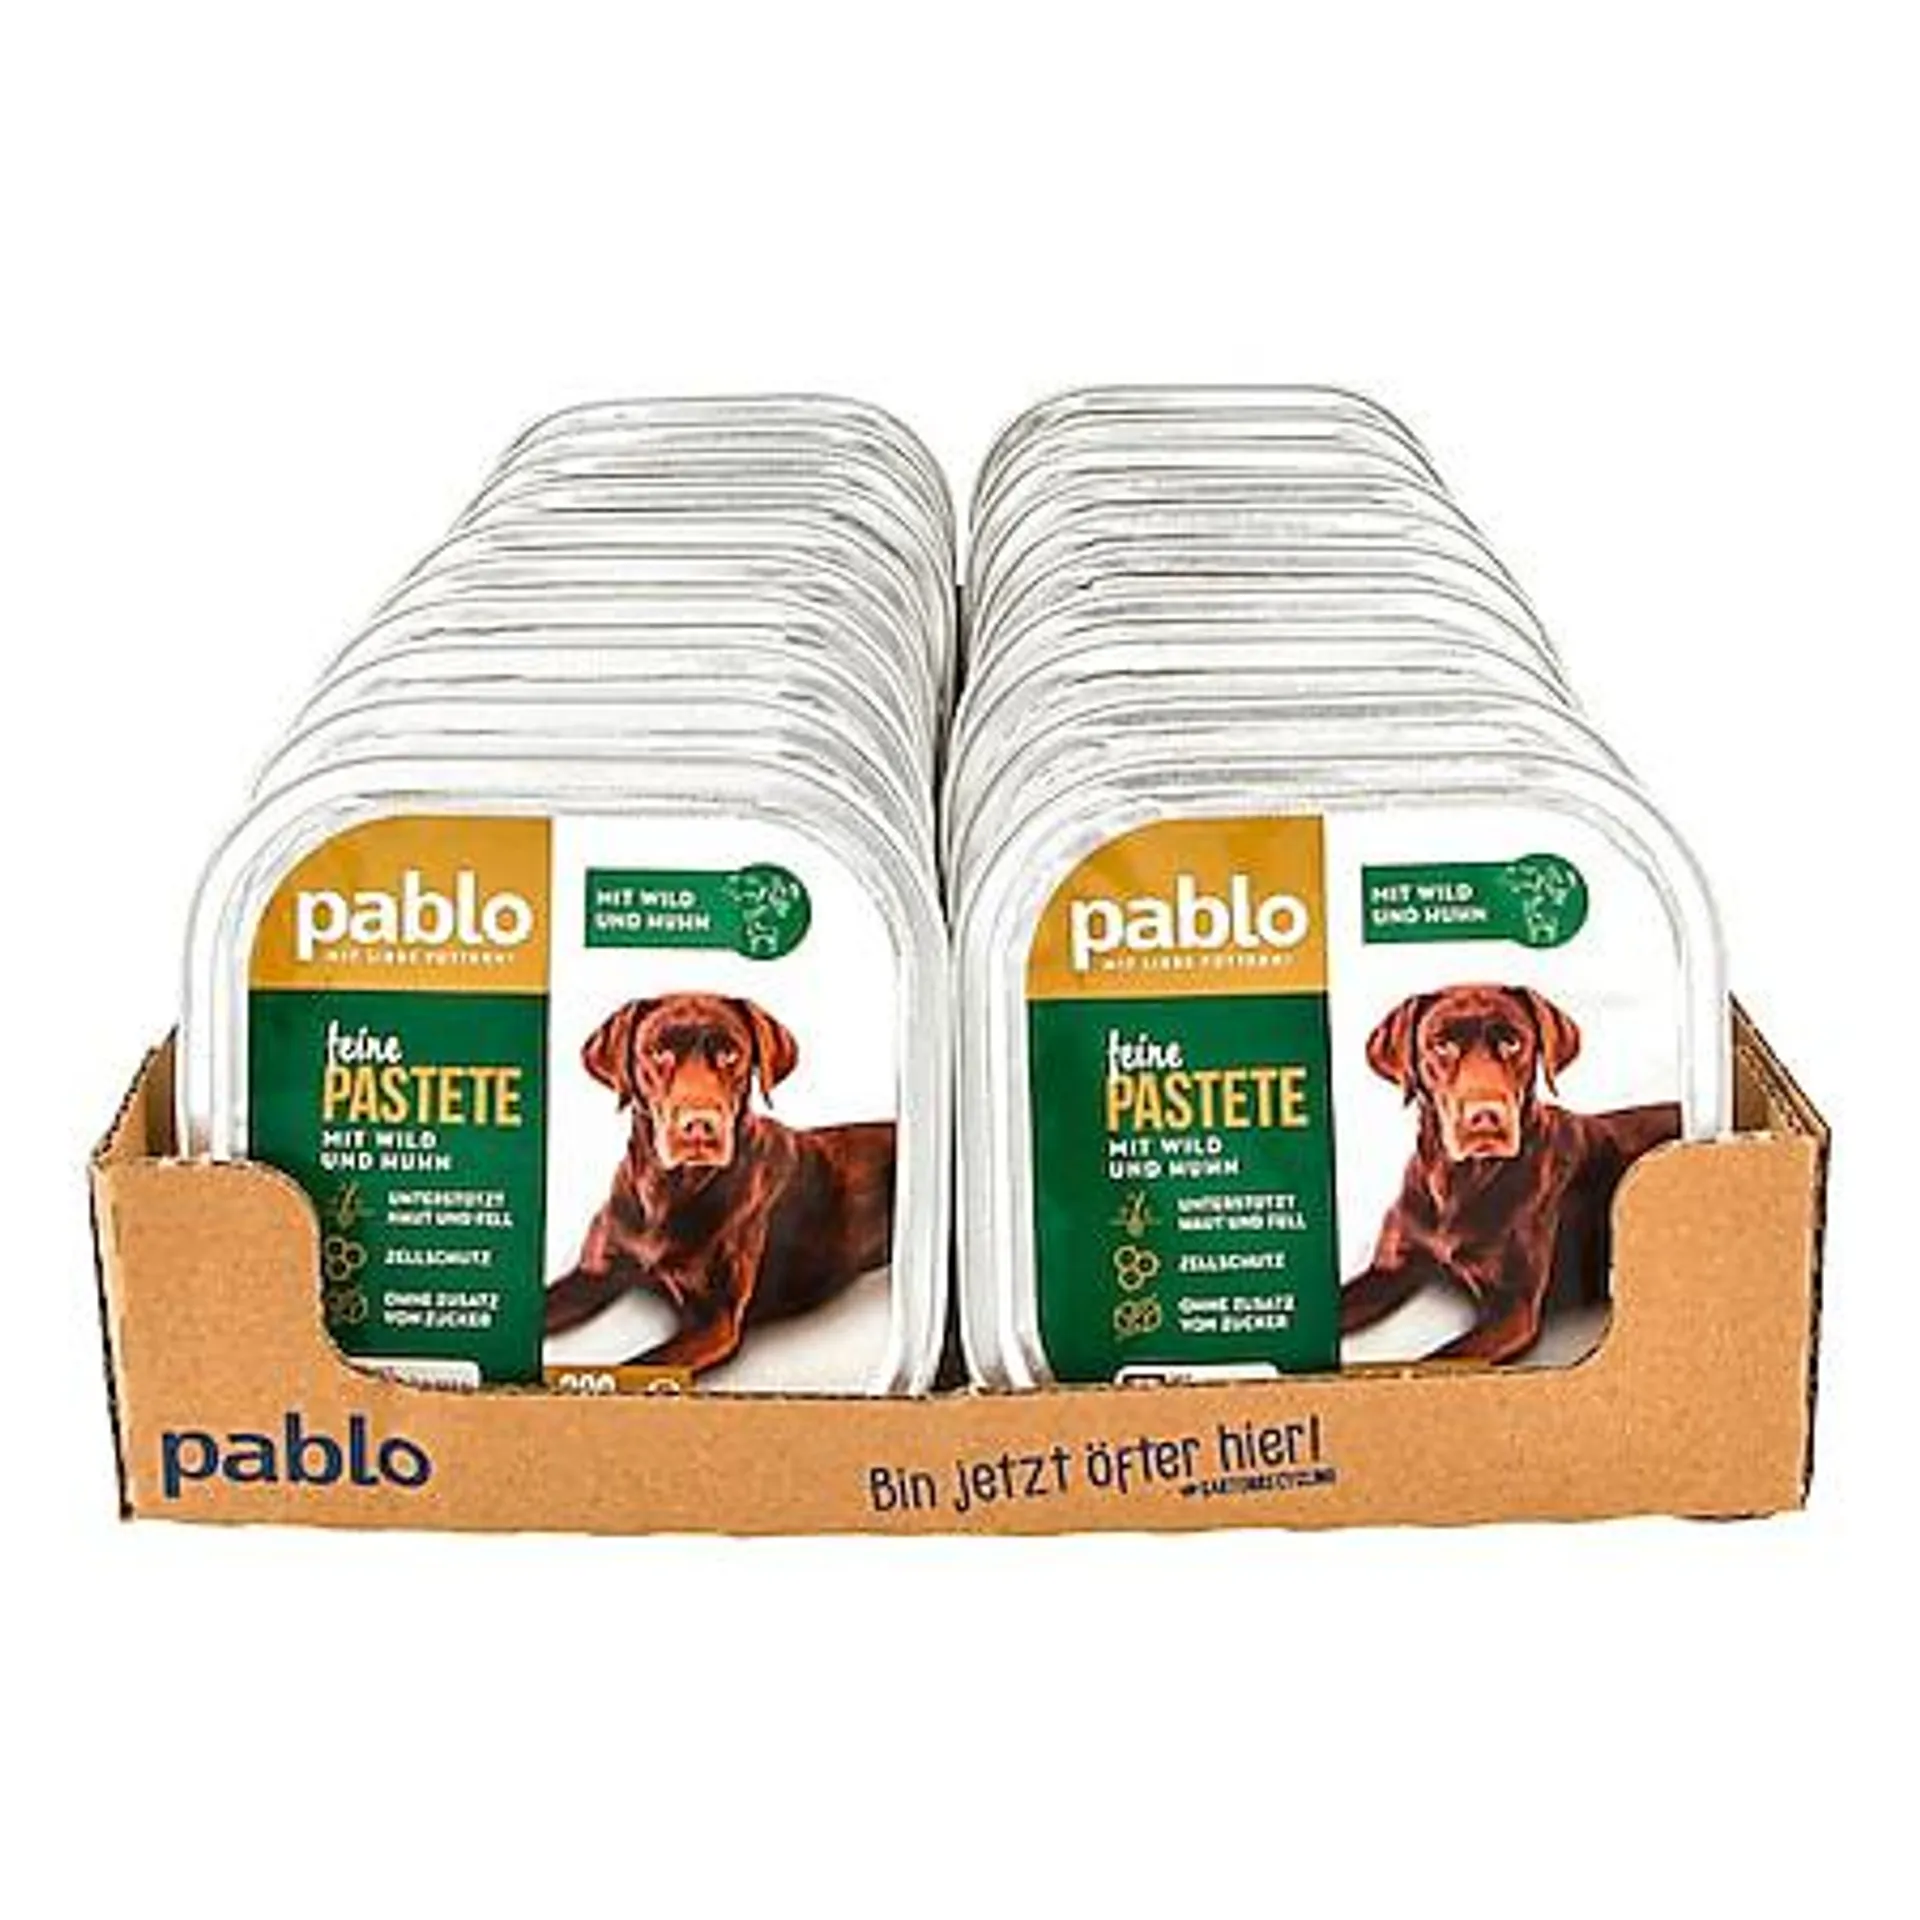 Pablo Hundenahrung Feine Pastete Wild & Huhn 300 g, 20er Pack